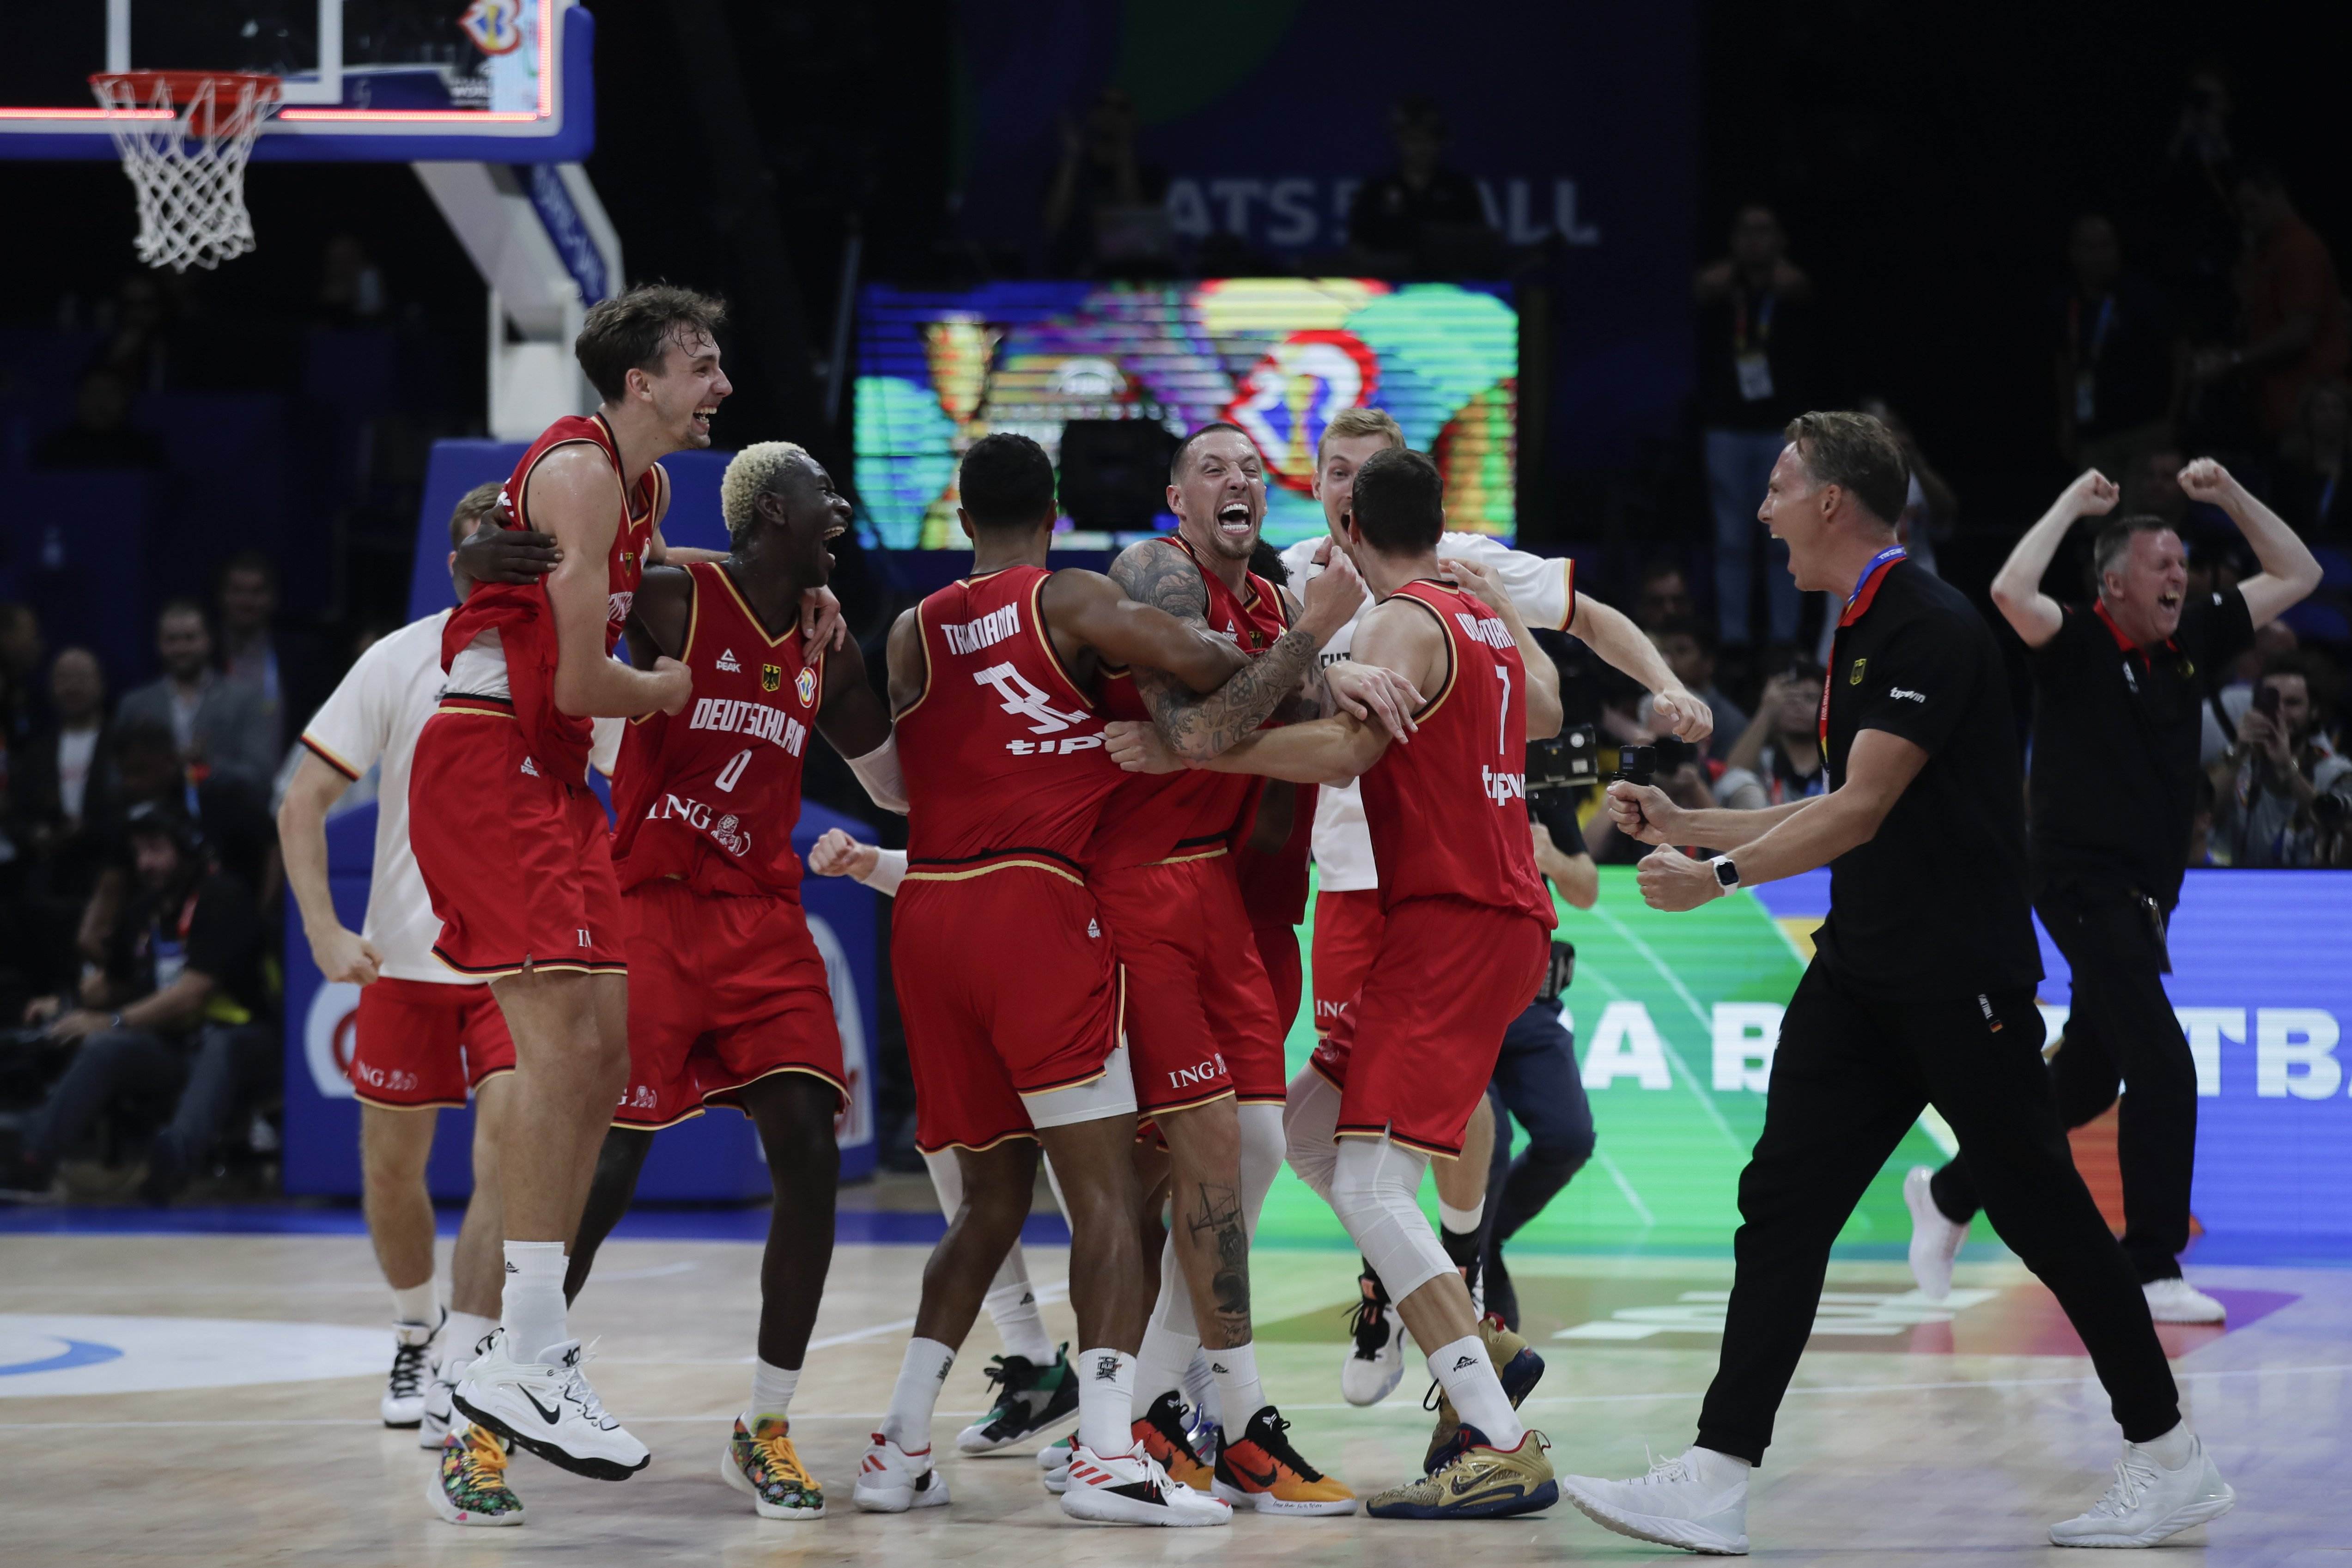 Sorpresa absoluta al Mundial de bàsquet: Alemanya es carrega els Estats Units a les semifinals